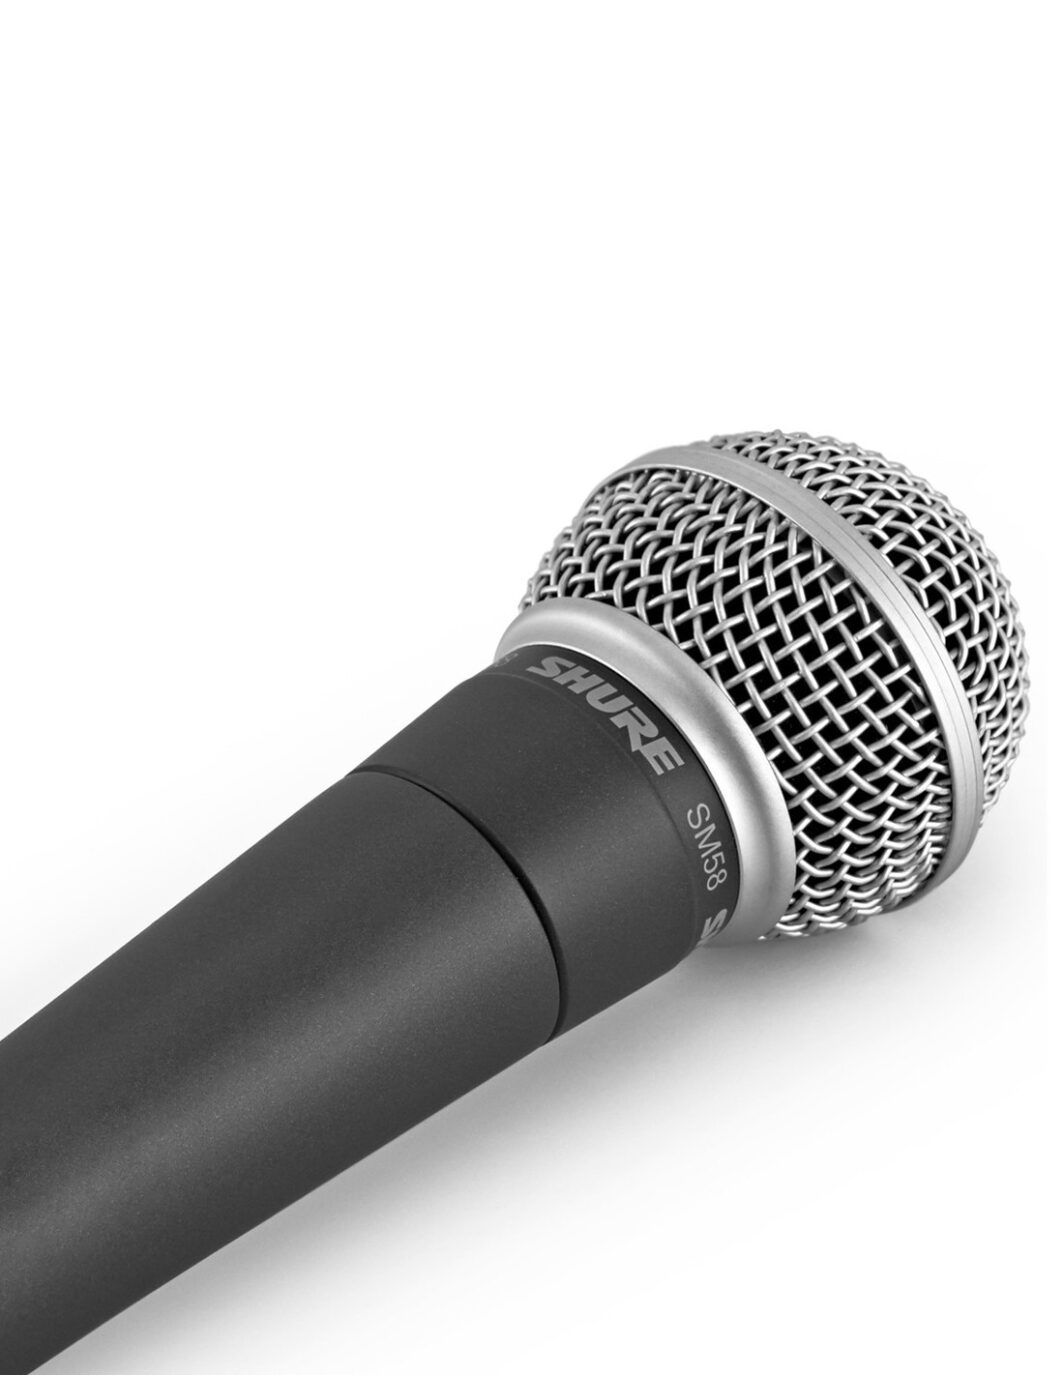 Shure SM58 Microfono Dinamico Cardioide per Voce